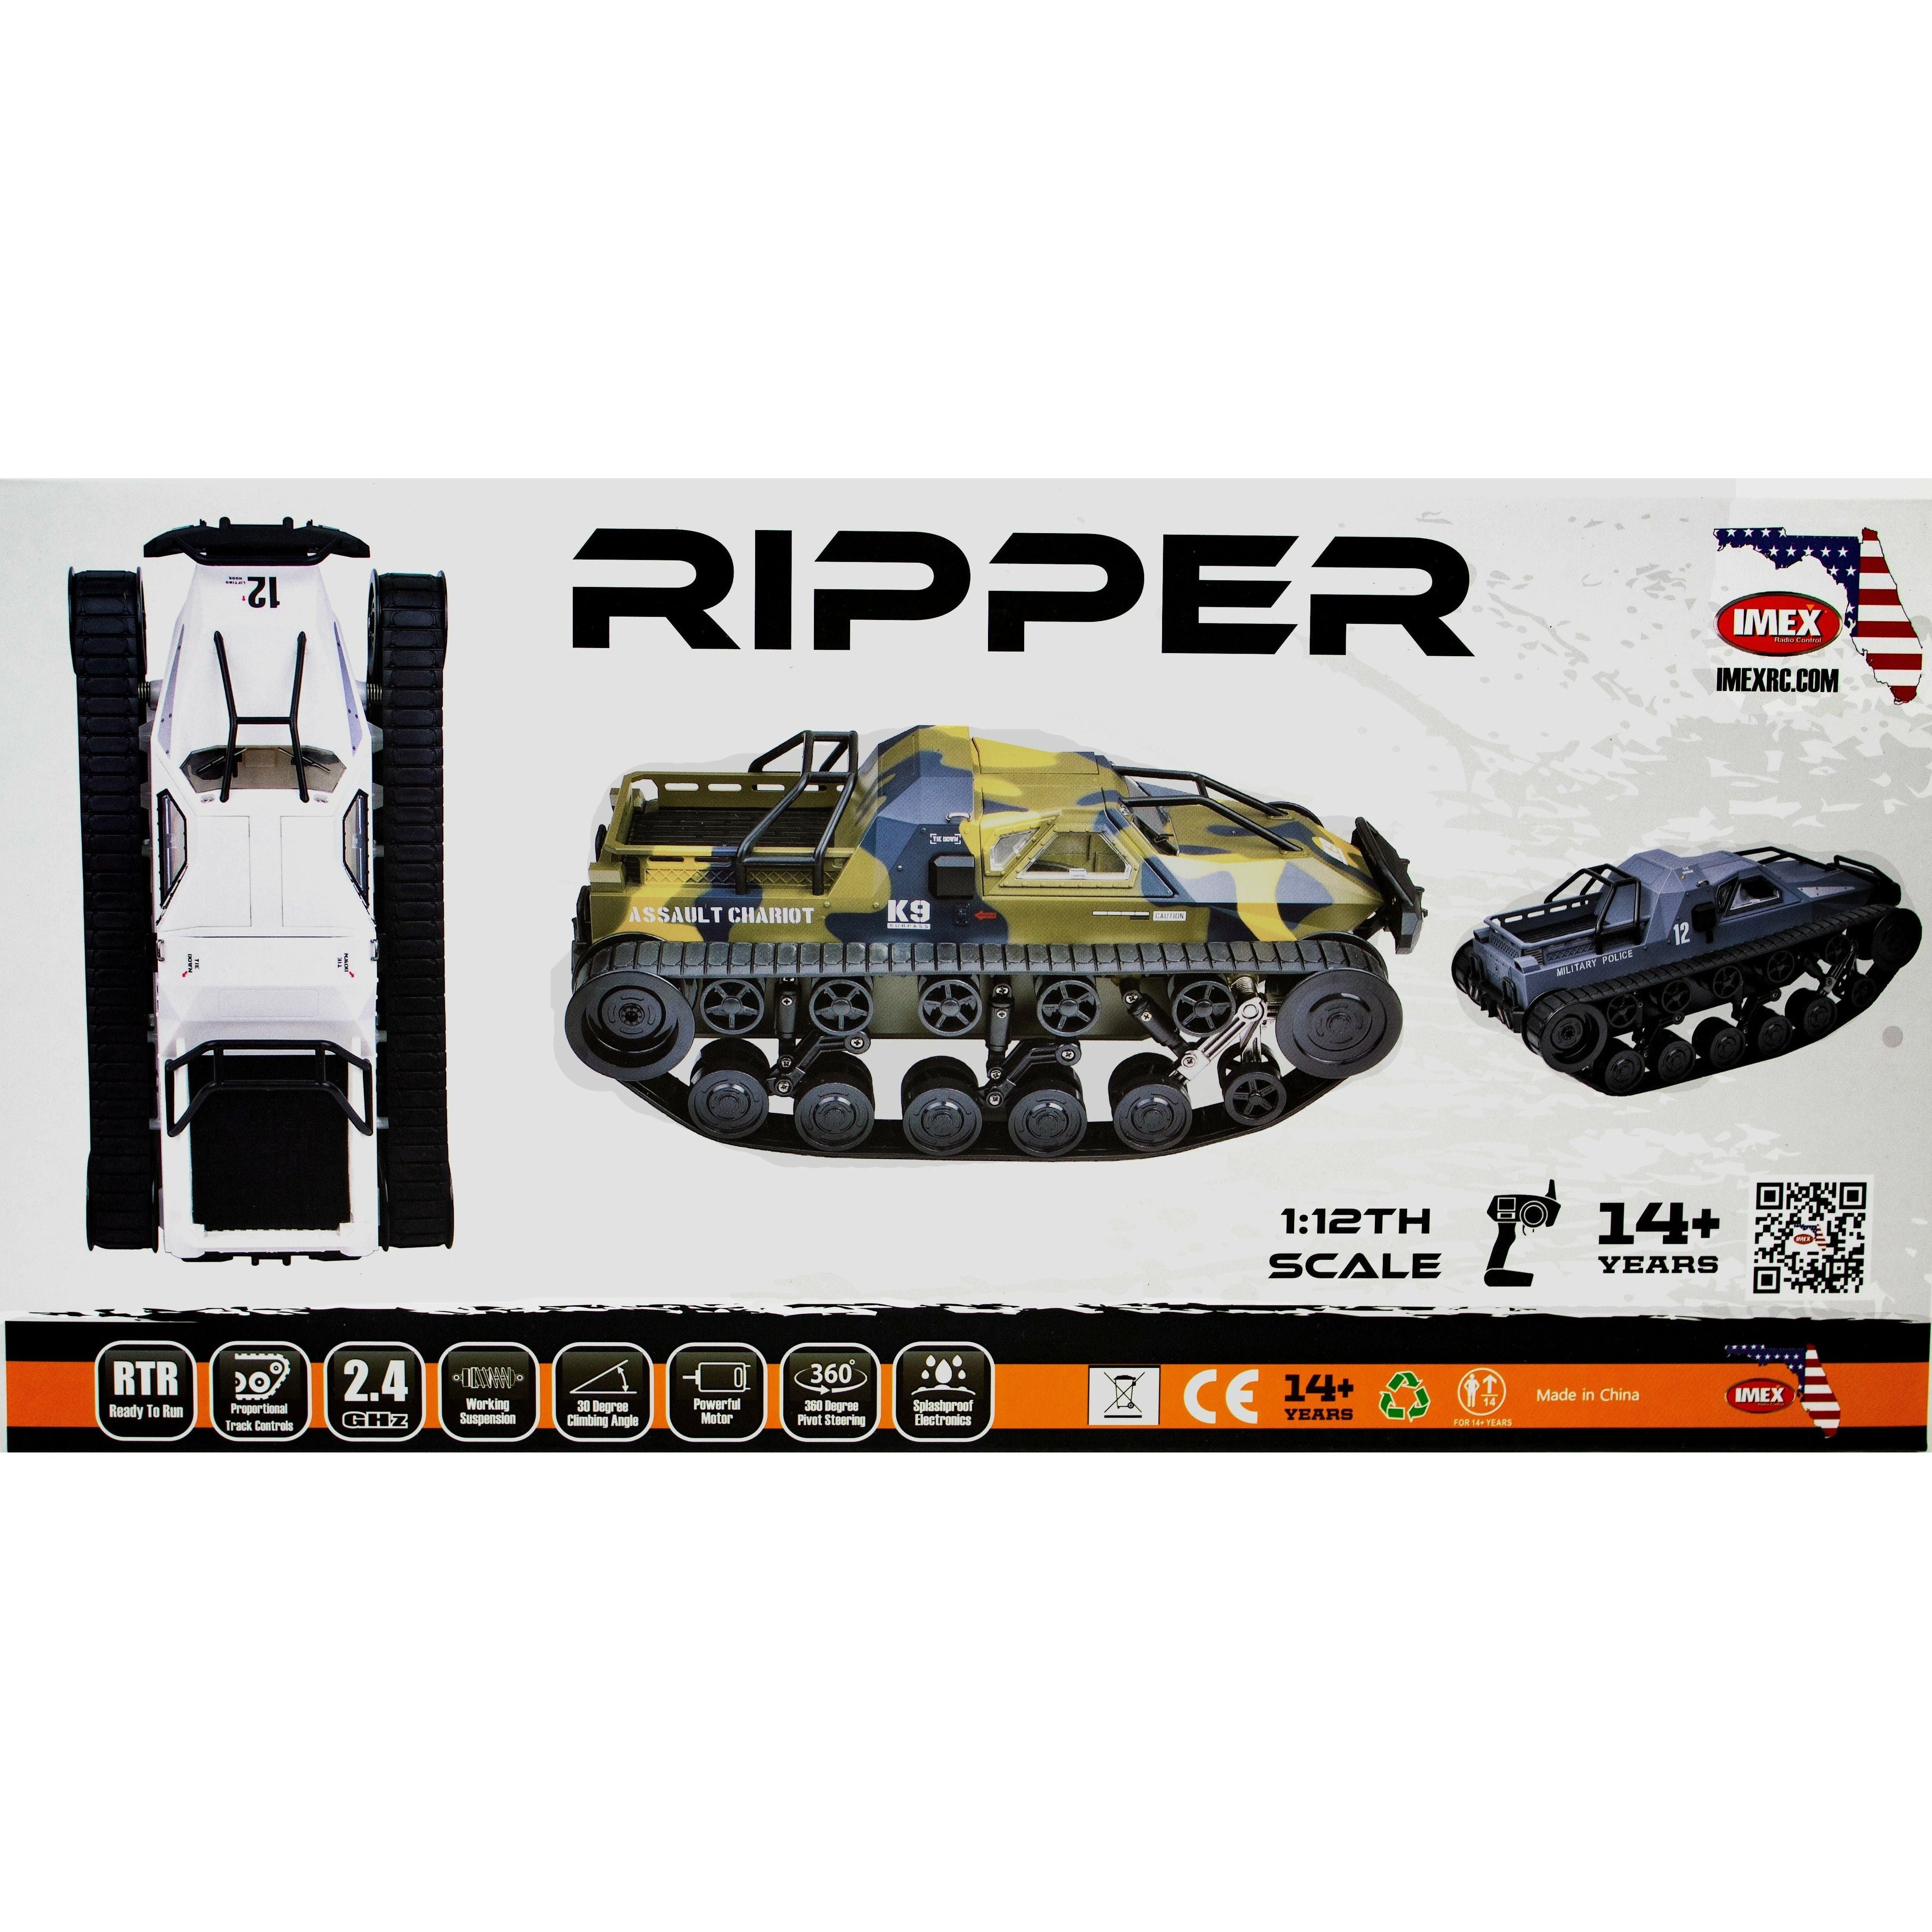 1/12 Scale Ripper- High-Speed Drift Tank